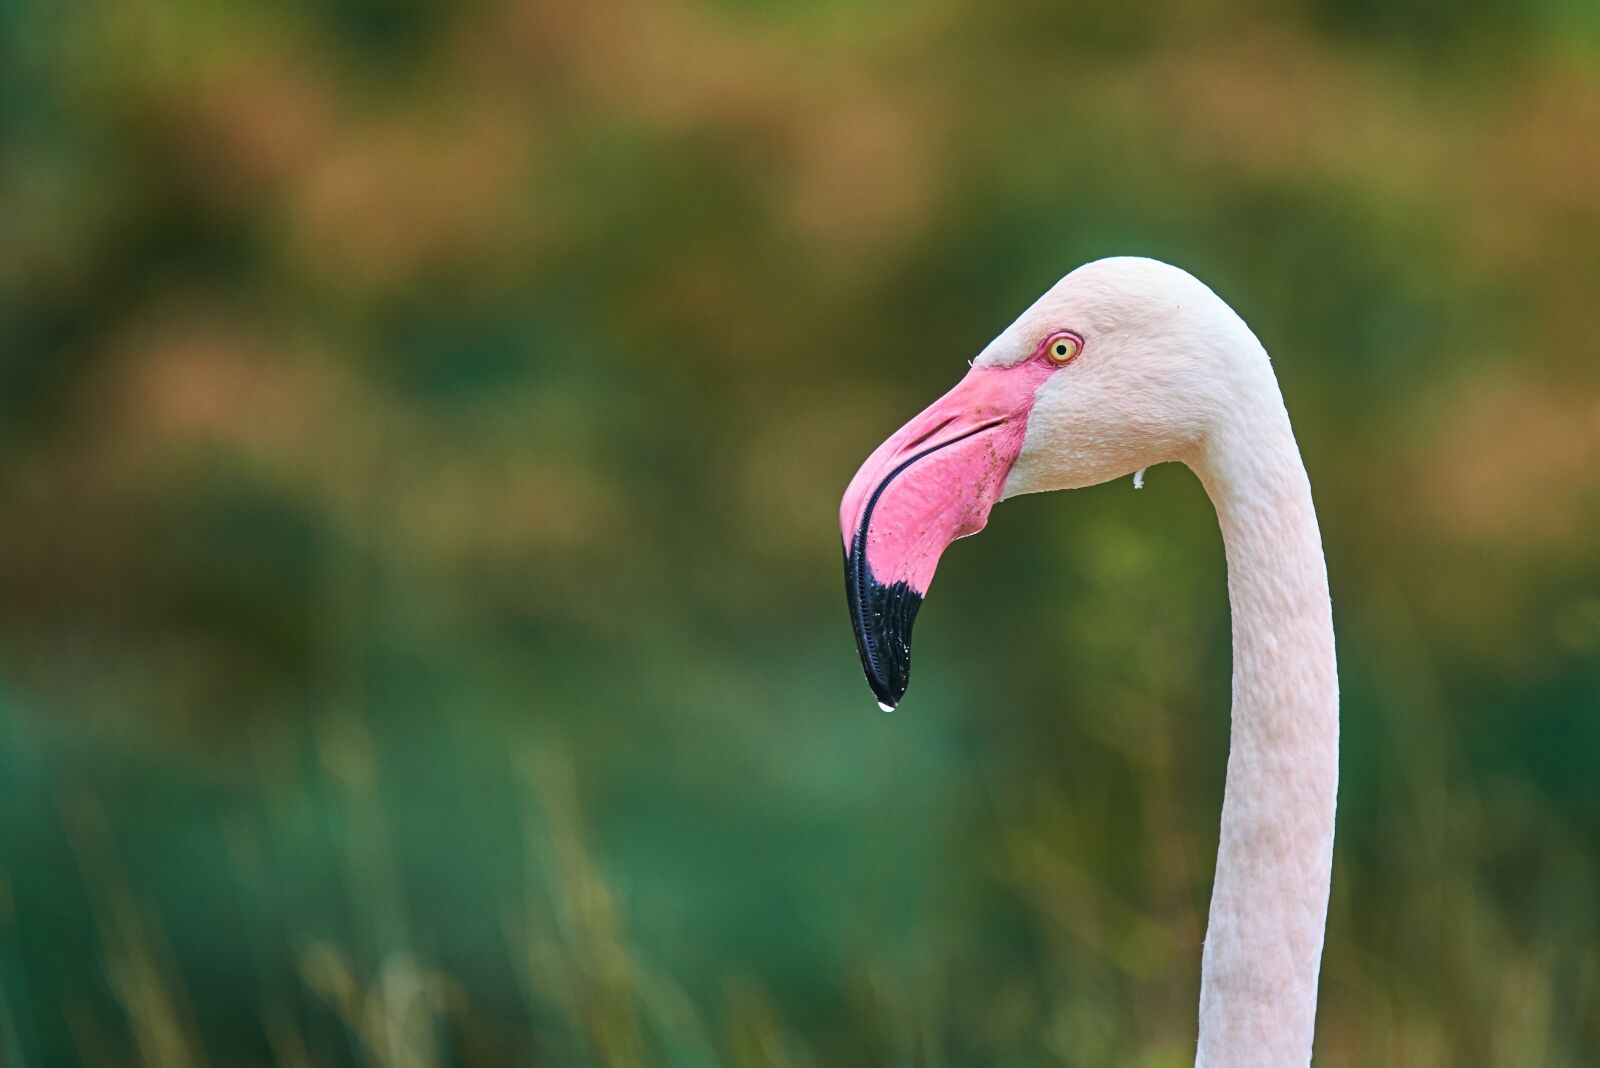 Nikon AF-S Nikkor 300mm f/4E PF ED VR sample photo. Flamingo, pink, bird photography